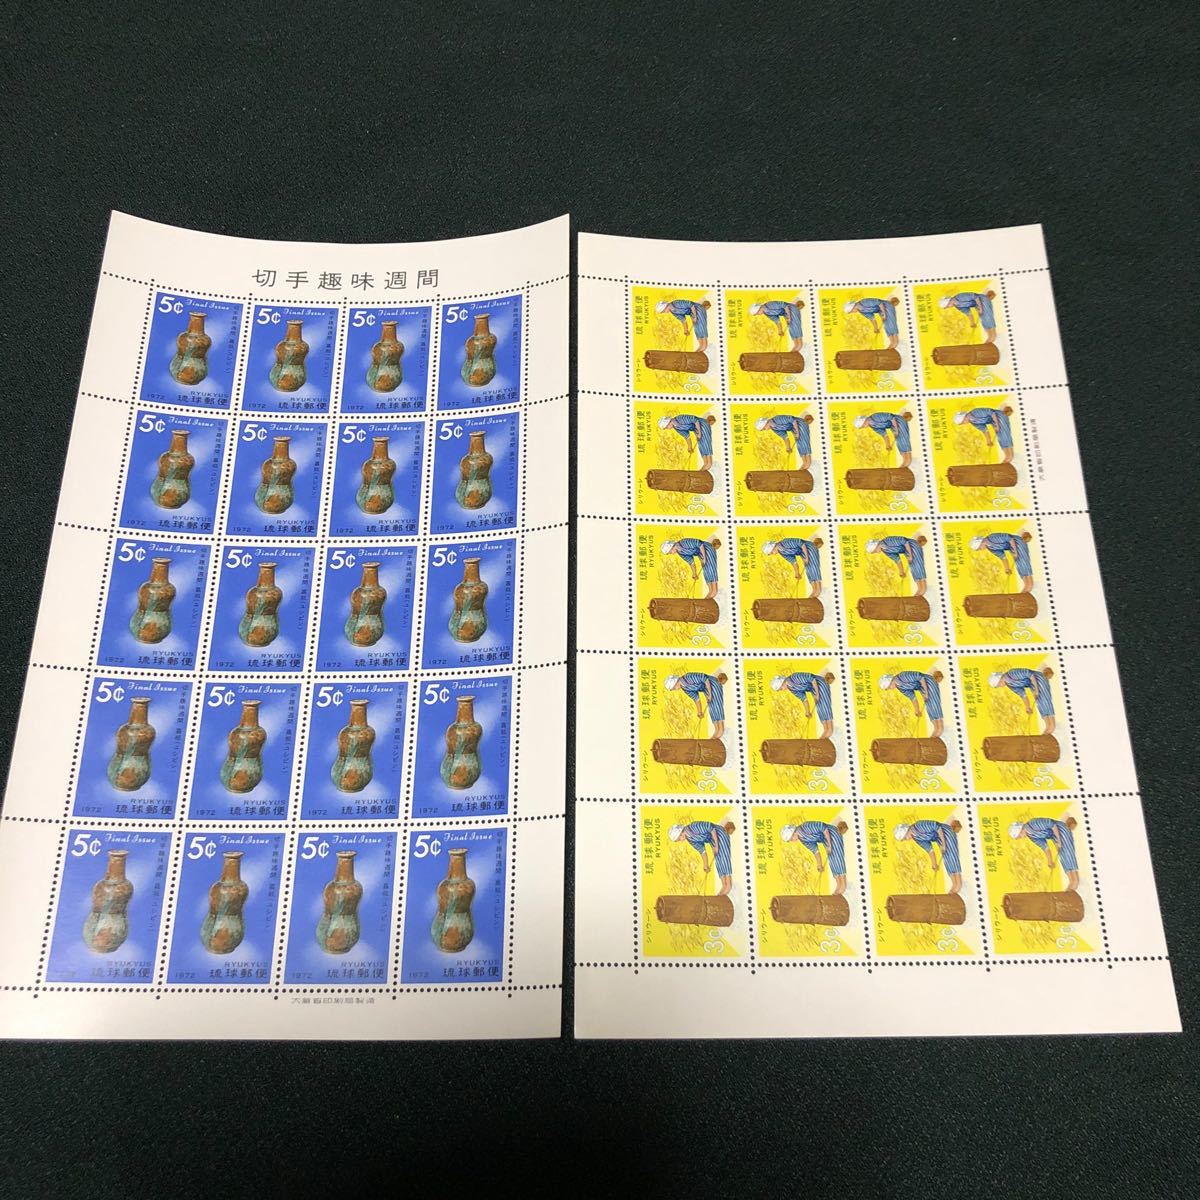 更に値下げしました。琉球切手シート10枚